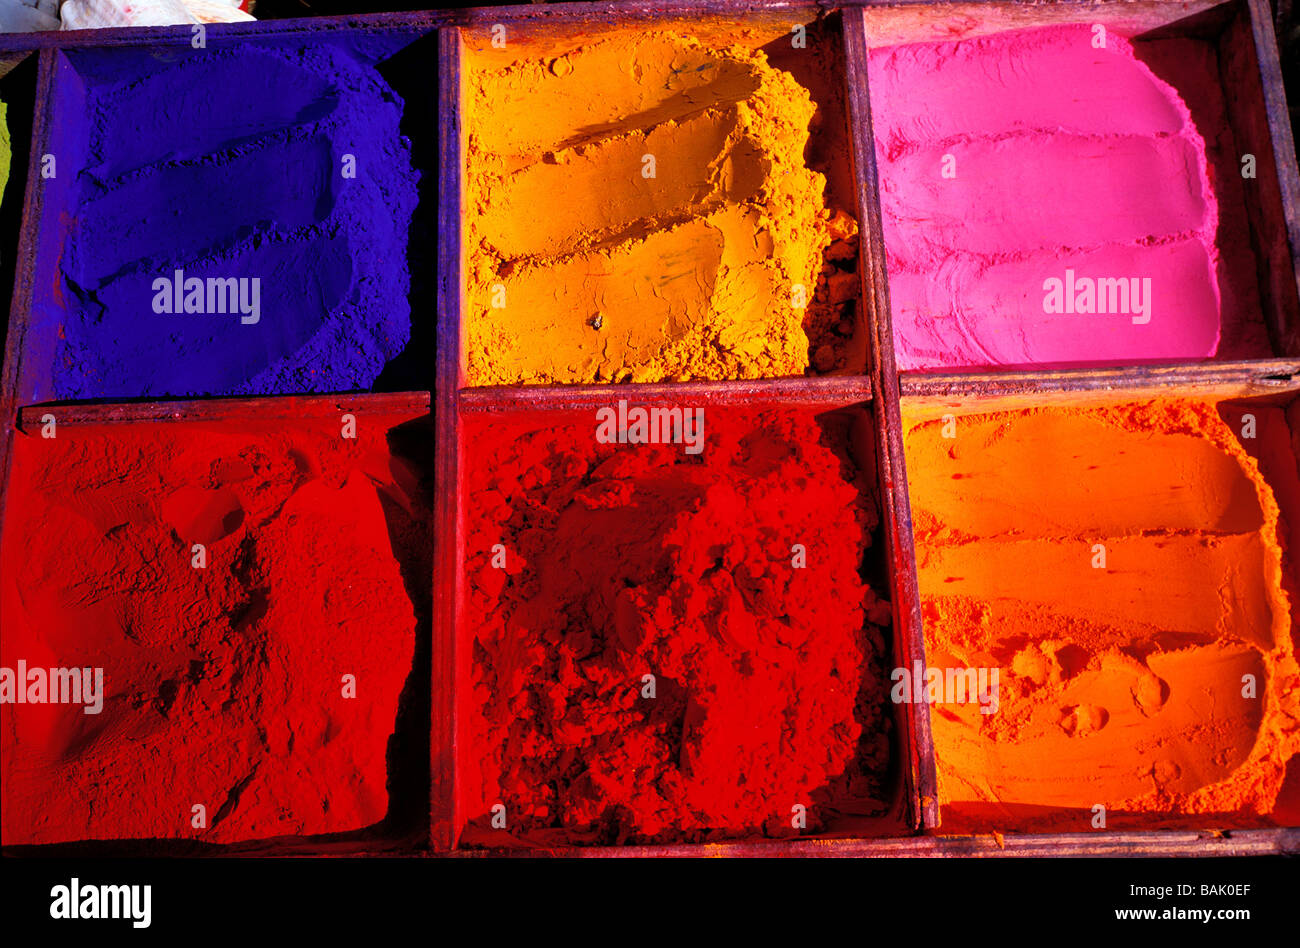 La vallée de Katmandou, Népal, Zone Bagmati, Katmandou, poudre de couleur pour les offrandes Banque D'Images